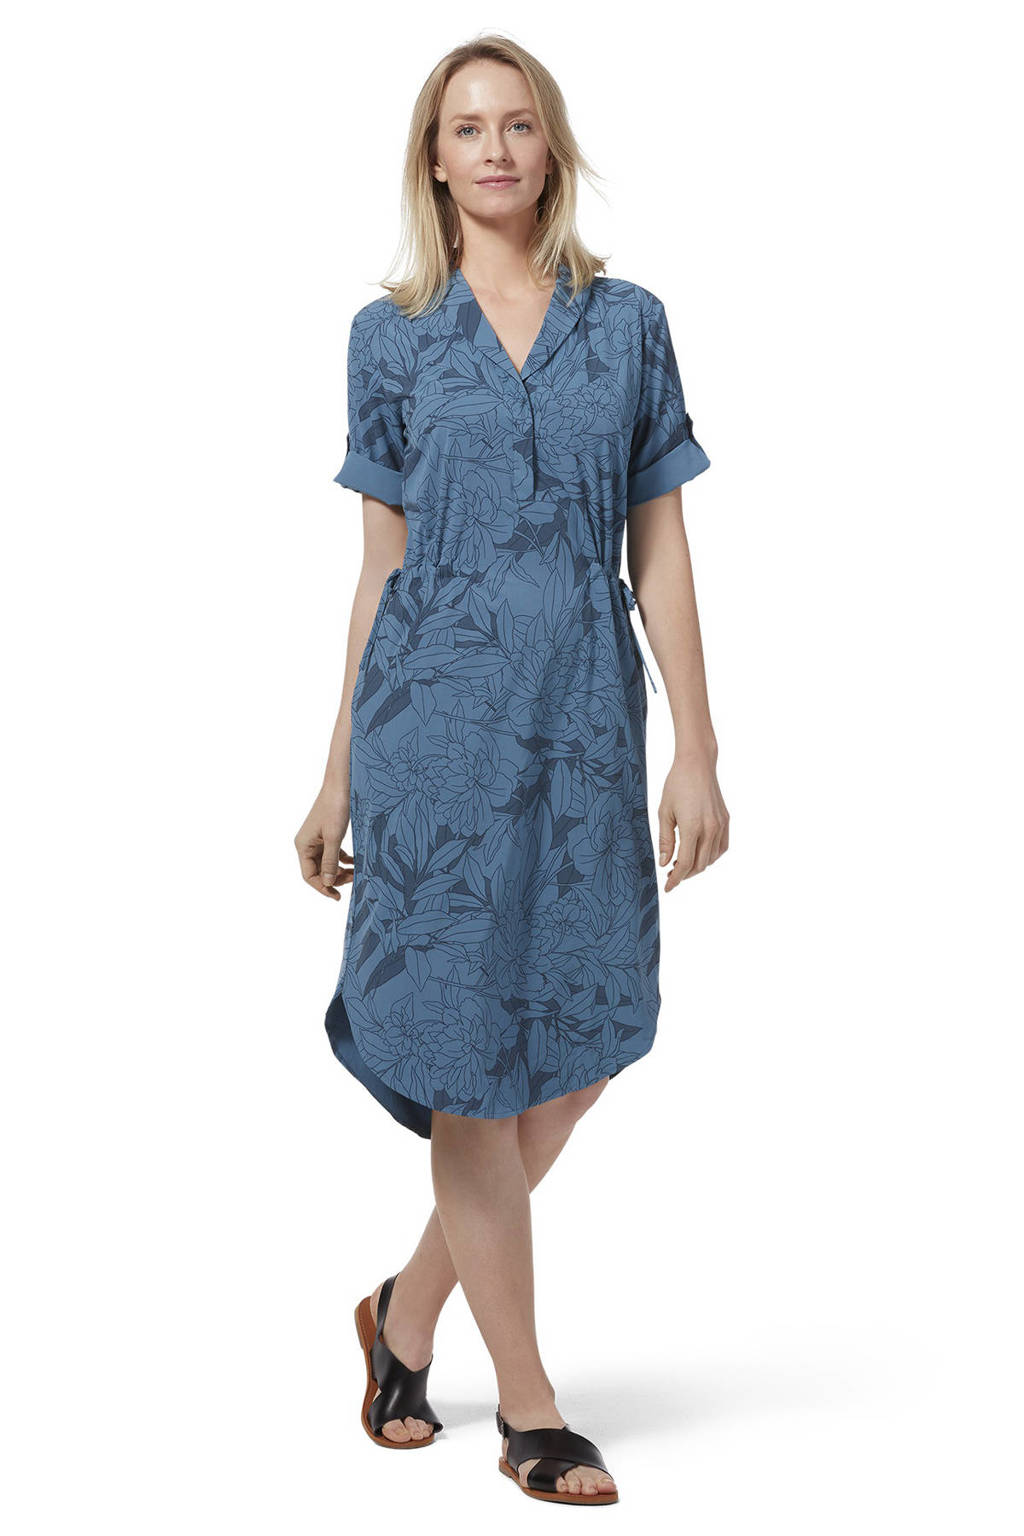 Jane Austen Sociale wetenschappen liberaal Royal Robbins outdoor jurk Spotless Traveler blauw | wehkamp